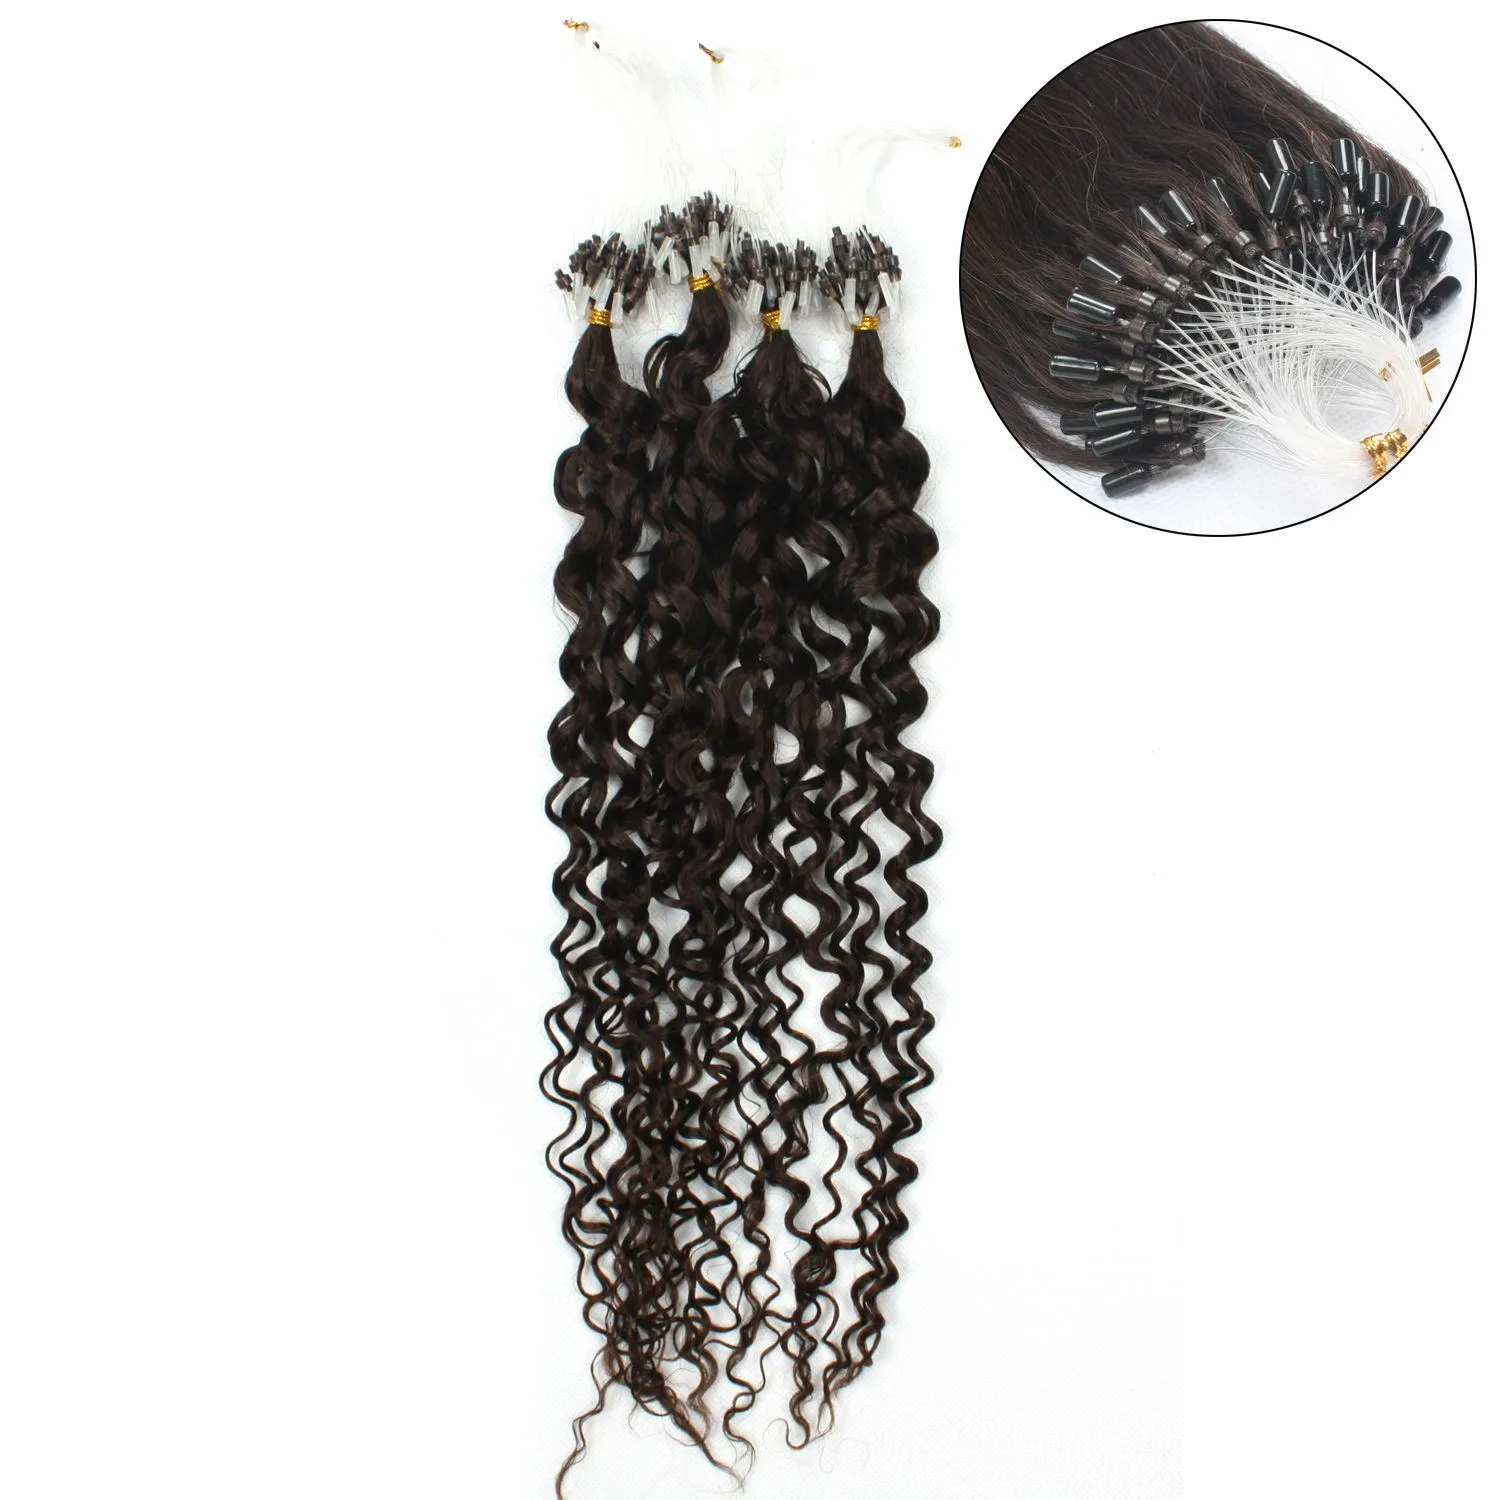 Elibess hår-micro ring hårförlängning 0.8g / sträng 200 strängar / mycket # 1 # 1b # 4 # 6 färg vatten våg loop mikro ring hårförlängningar